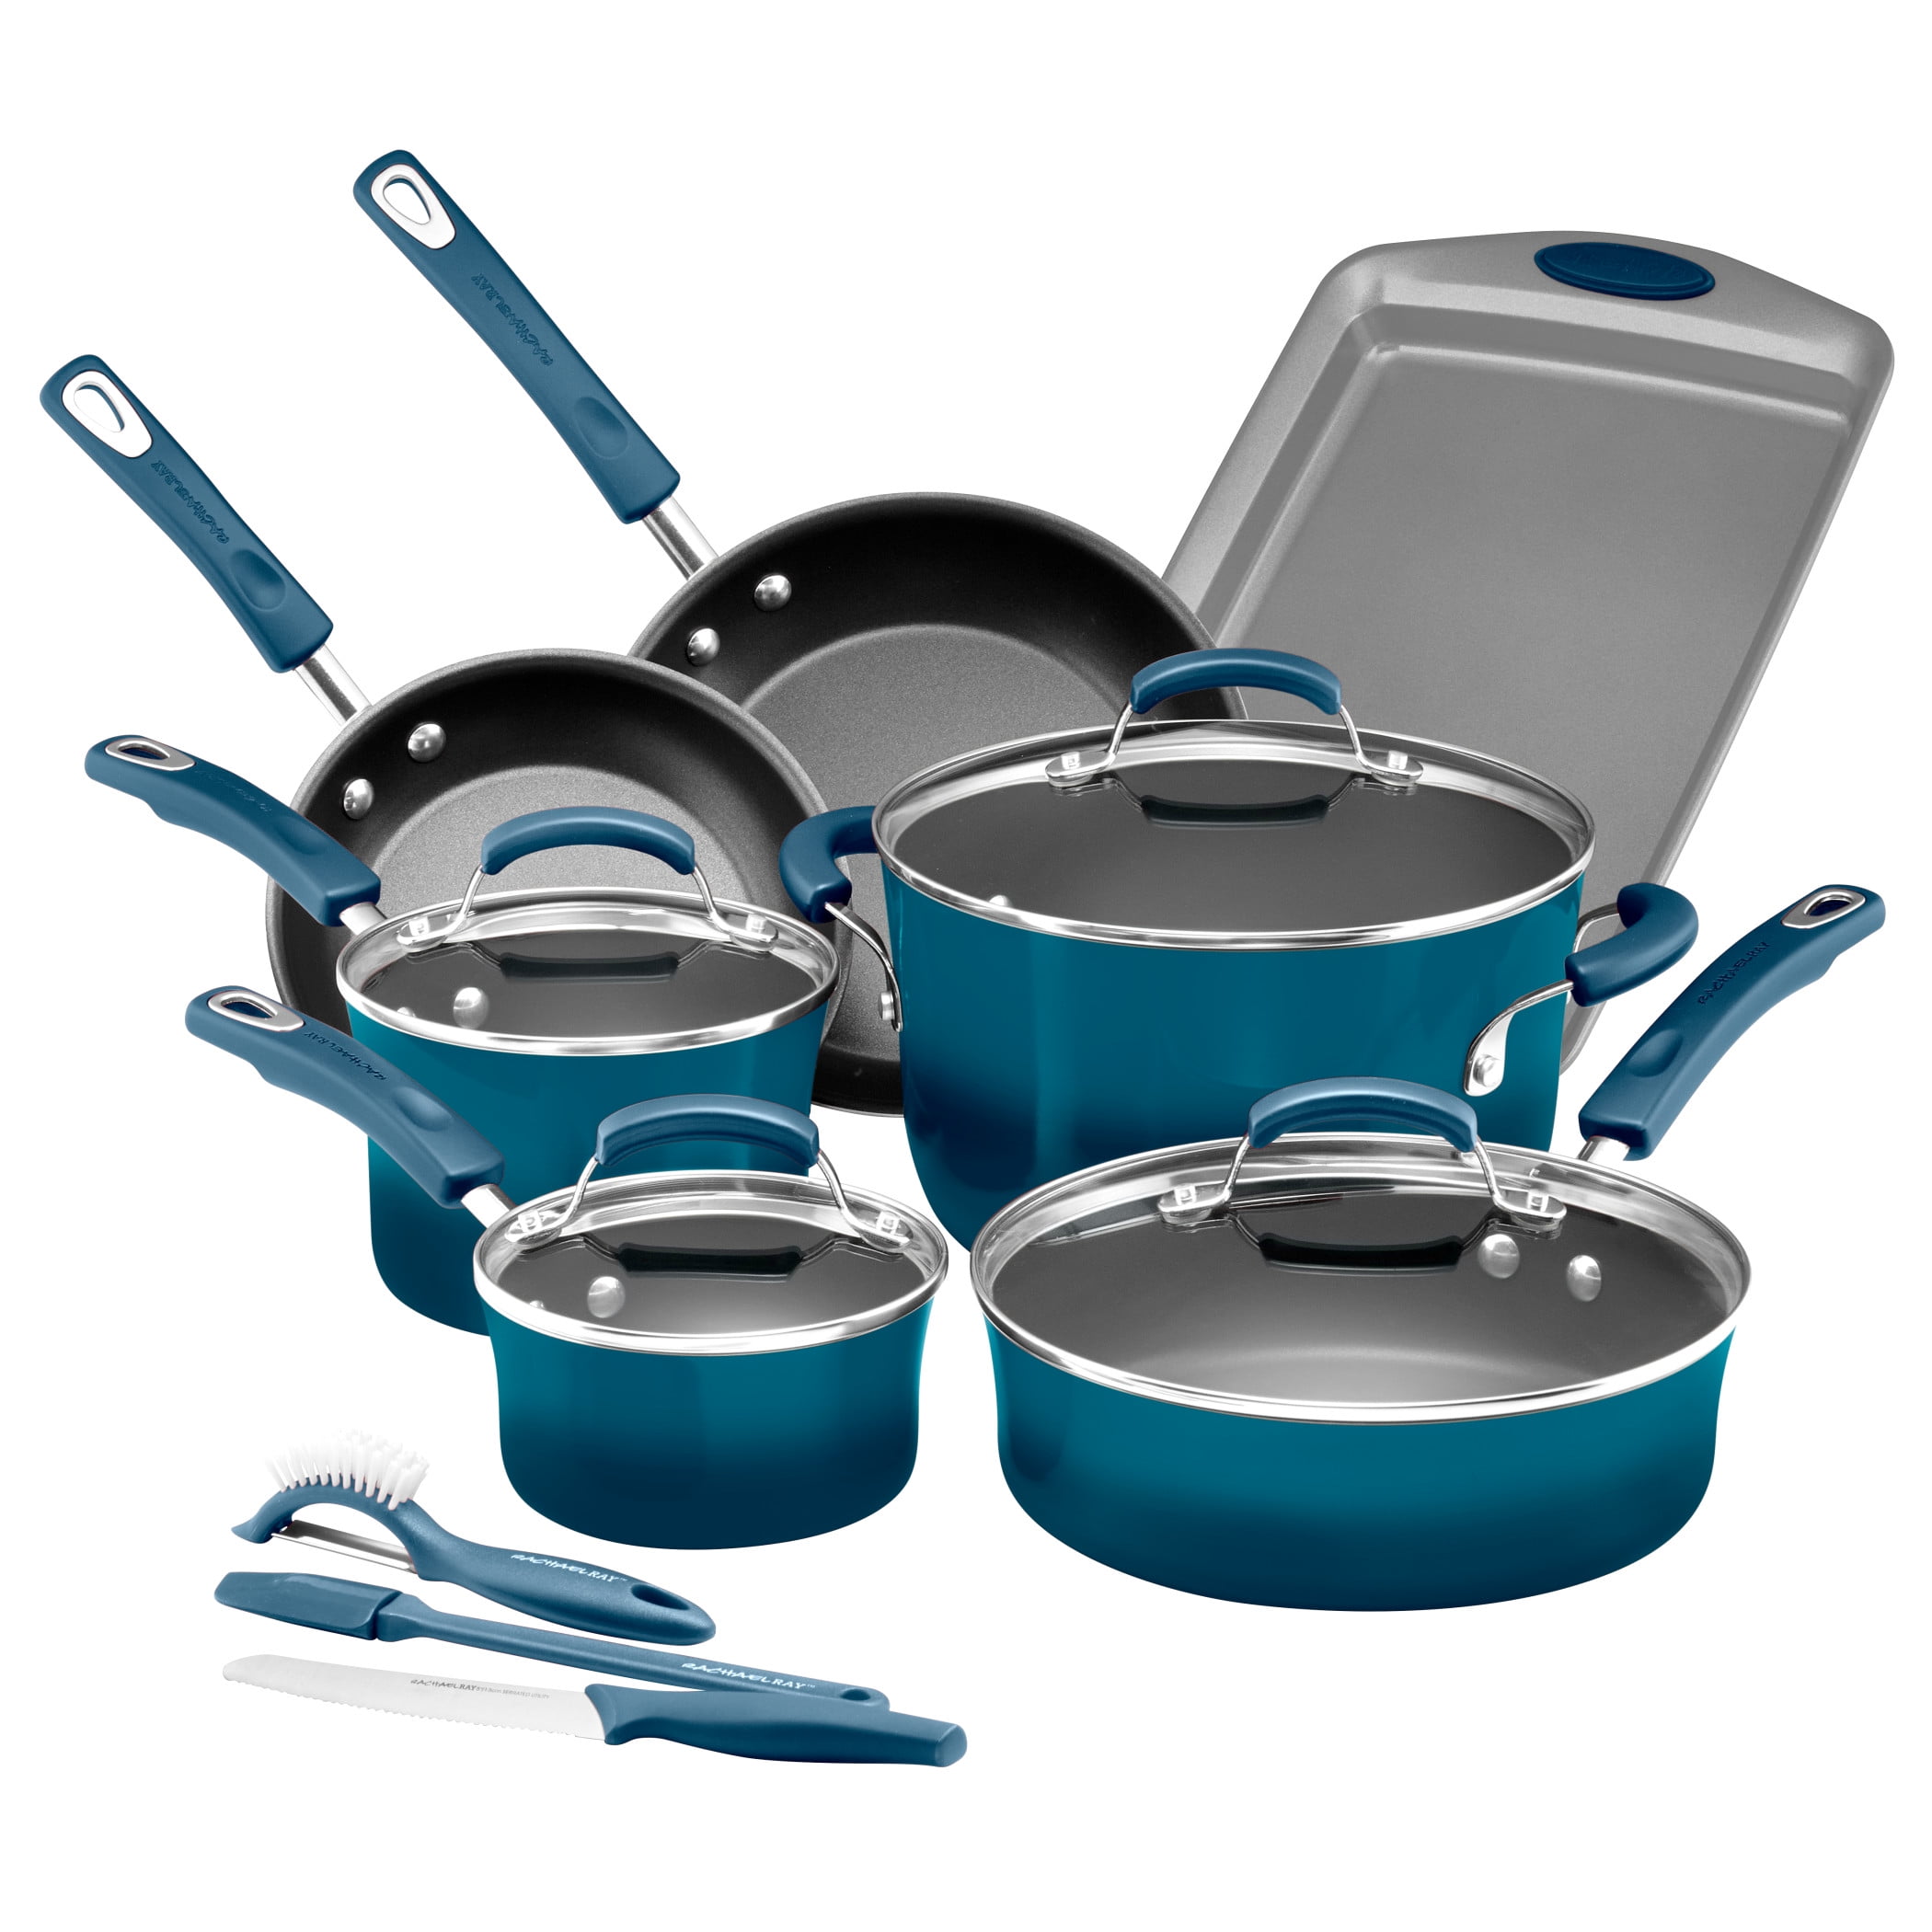 Details about   Nonstick 15 Piece Hard Enamel Aluminum Pots & Pans Cookware Set Marine Blue 